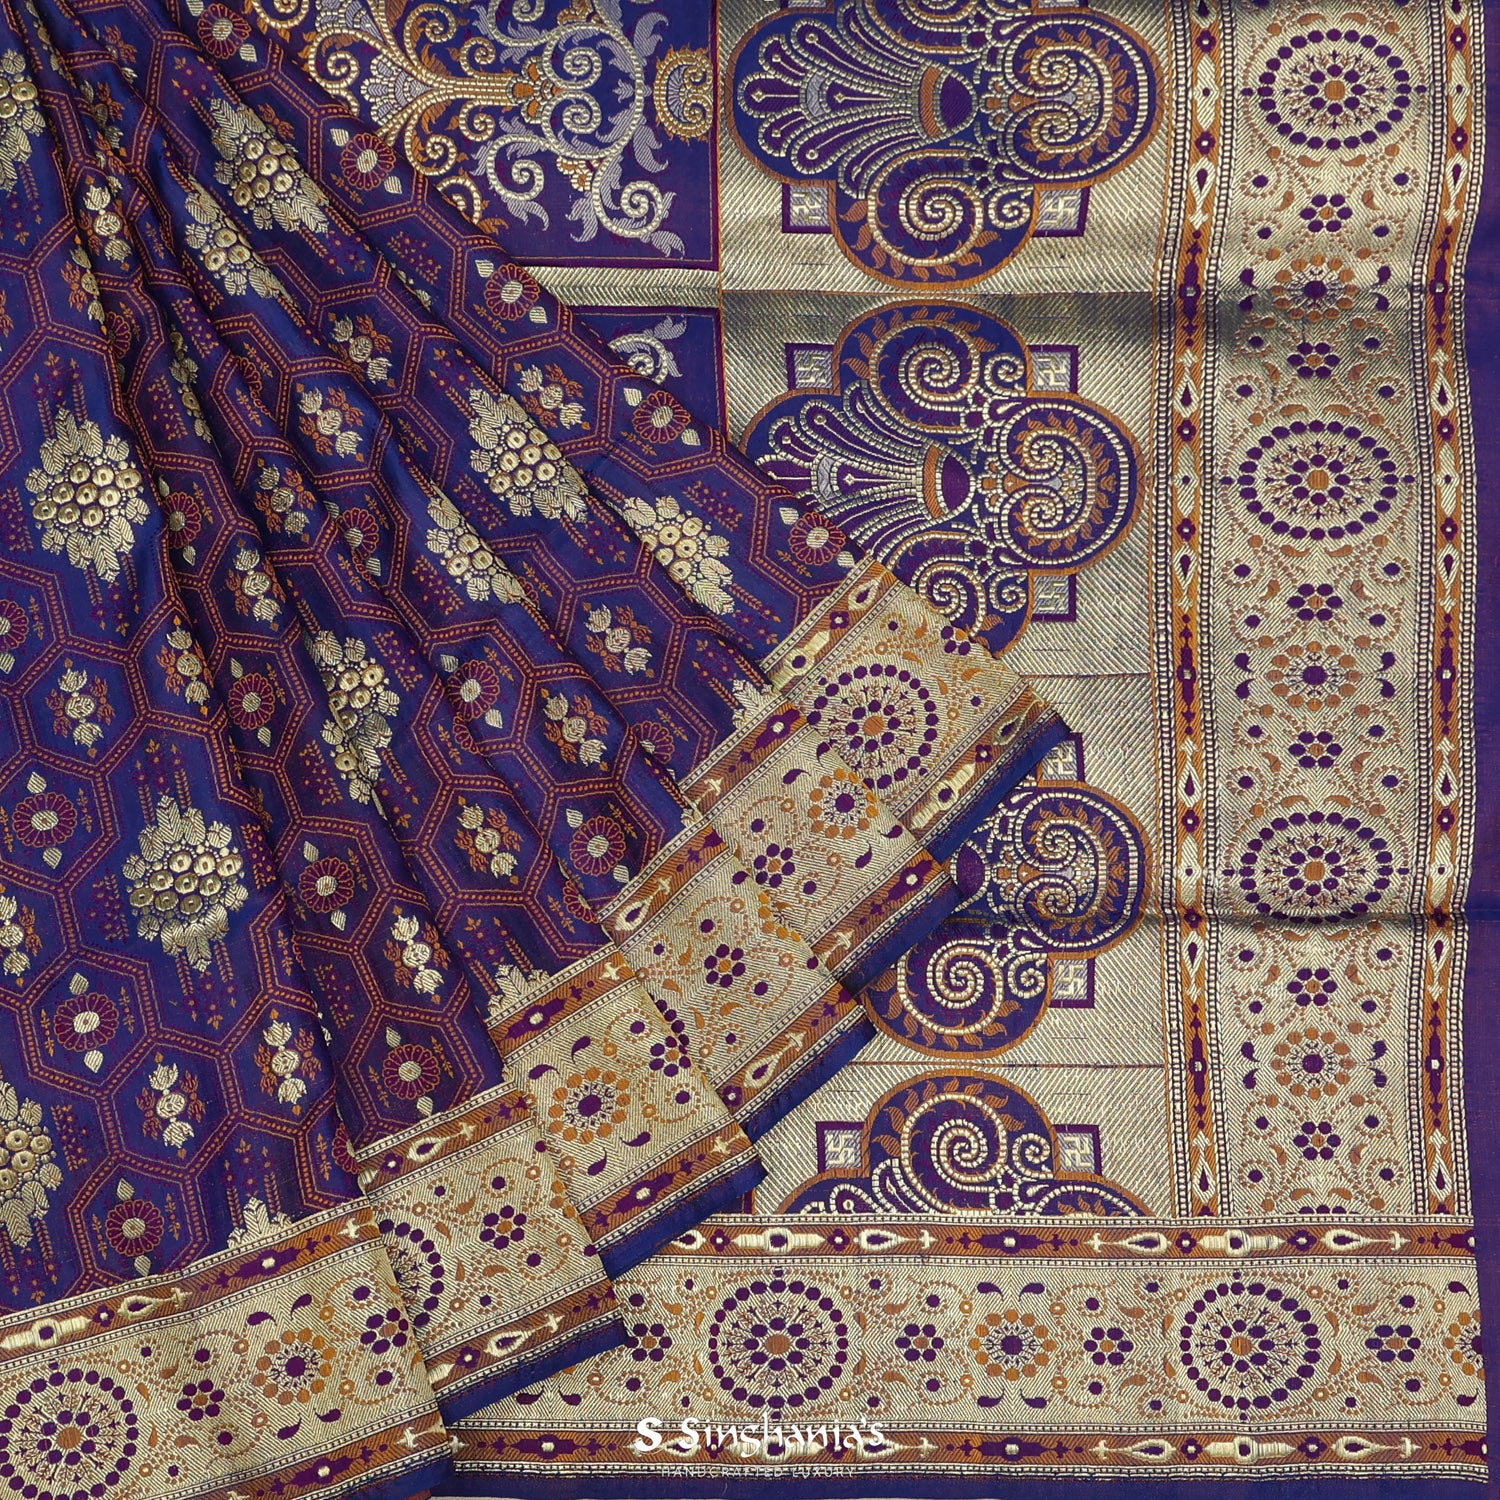 Violet Silk Saree With Banarasi Weaving